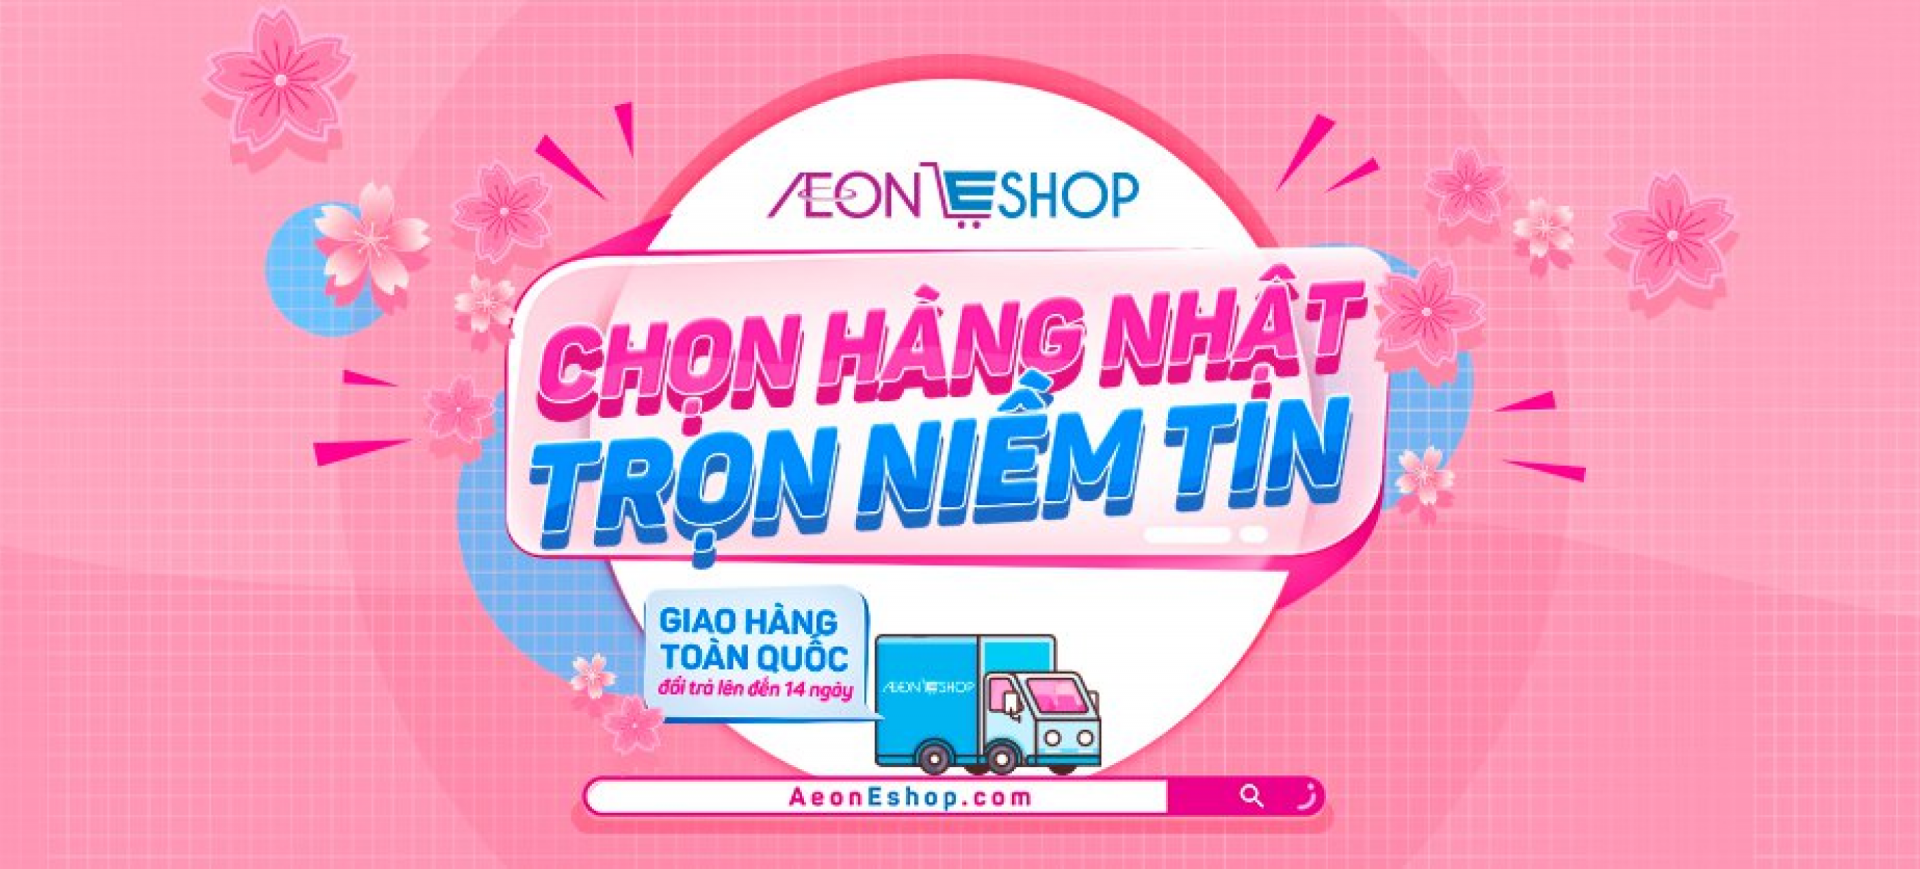 Aeon fresh online